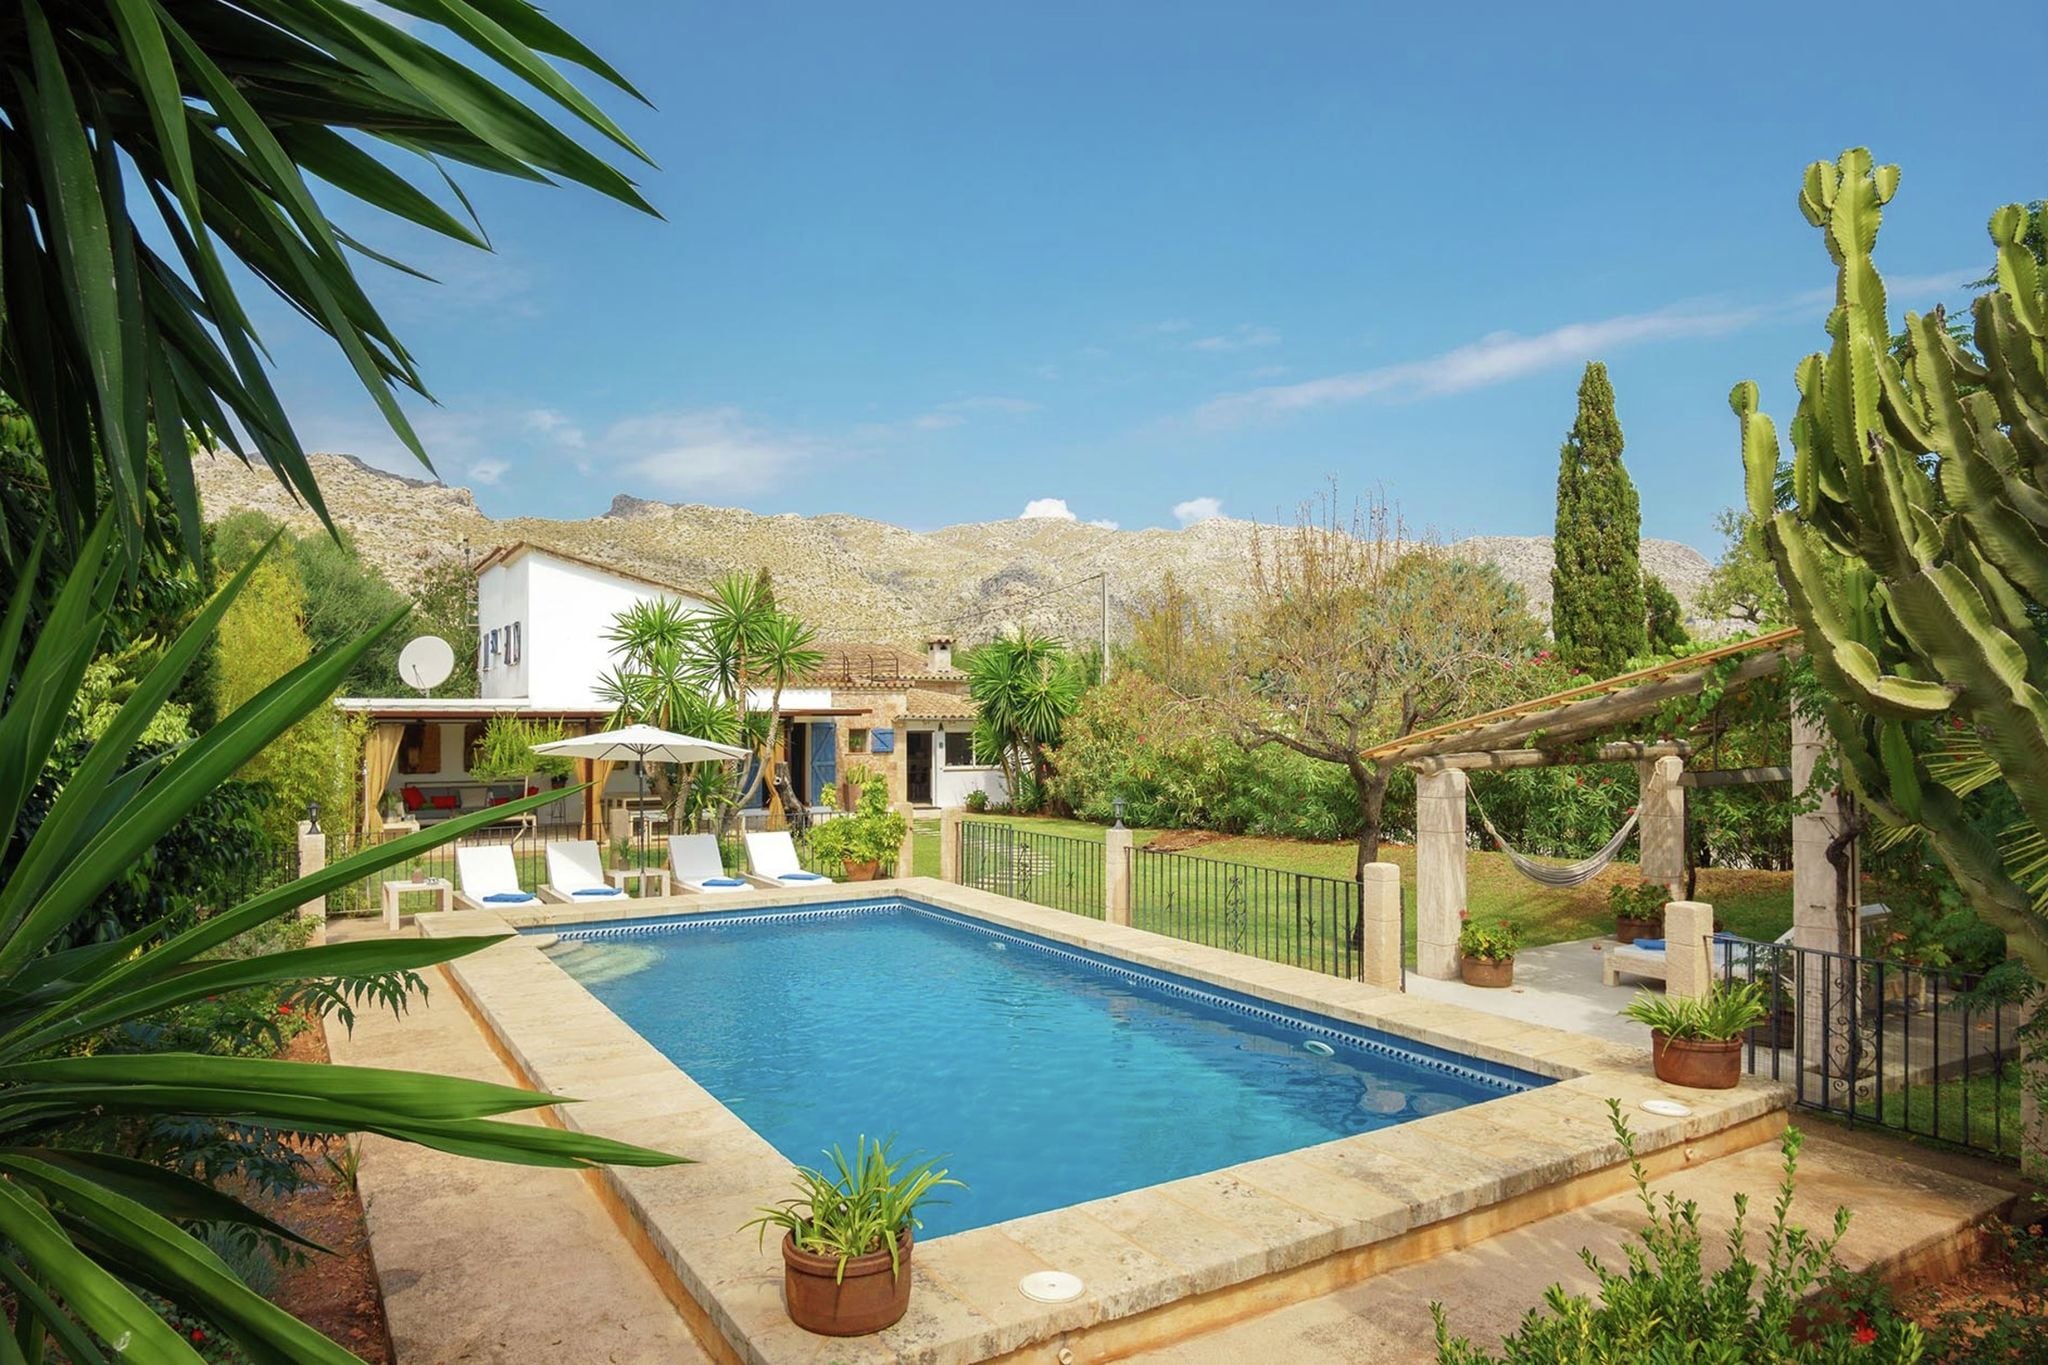 Mooi landhuis rustig landelijk gelegen vlakbij Pollença met privézwembad